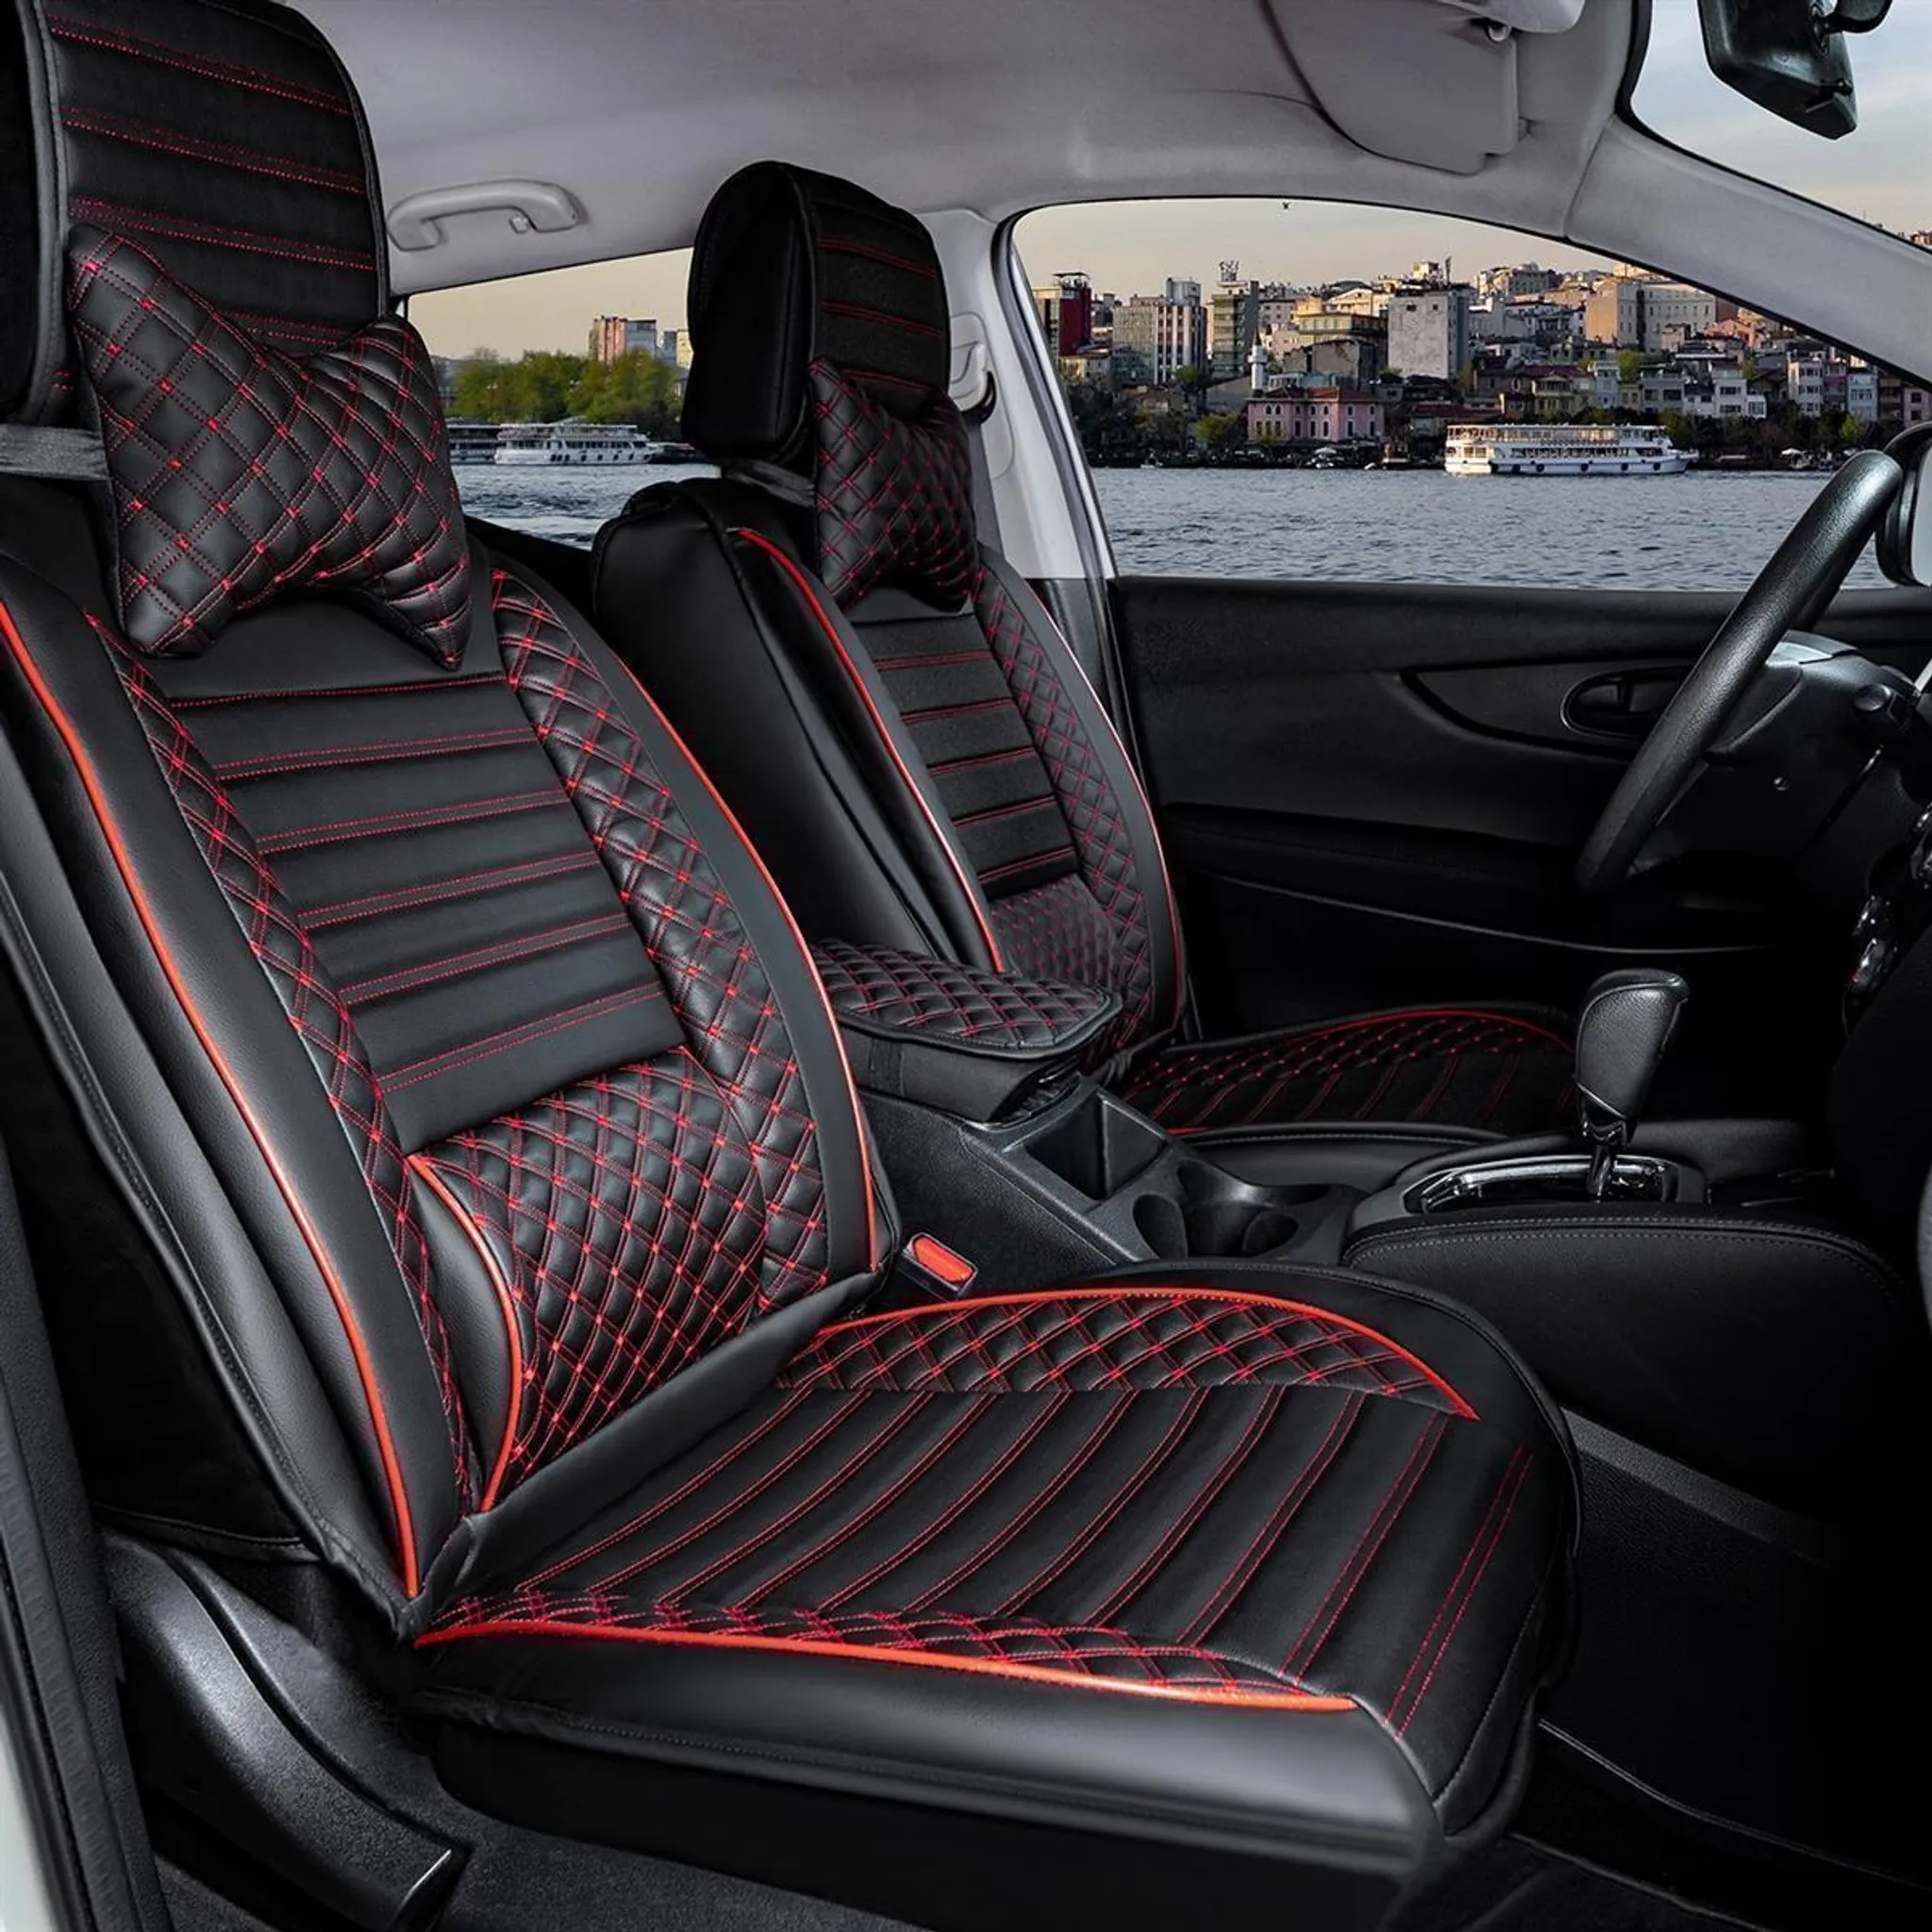 Sitzbezüge Auto Leder Autositzbezüge Universal Set für Seat Leon